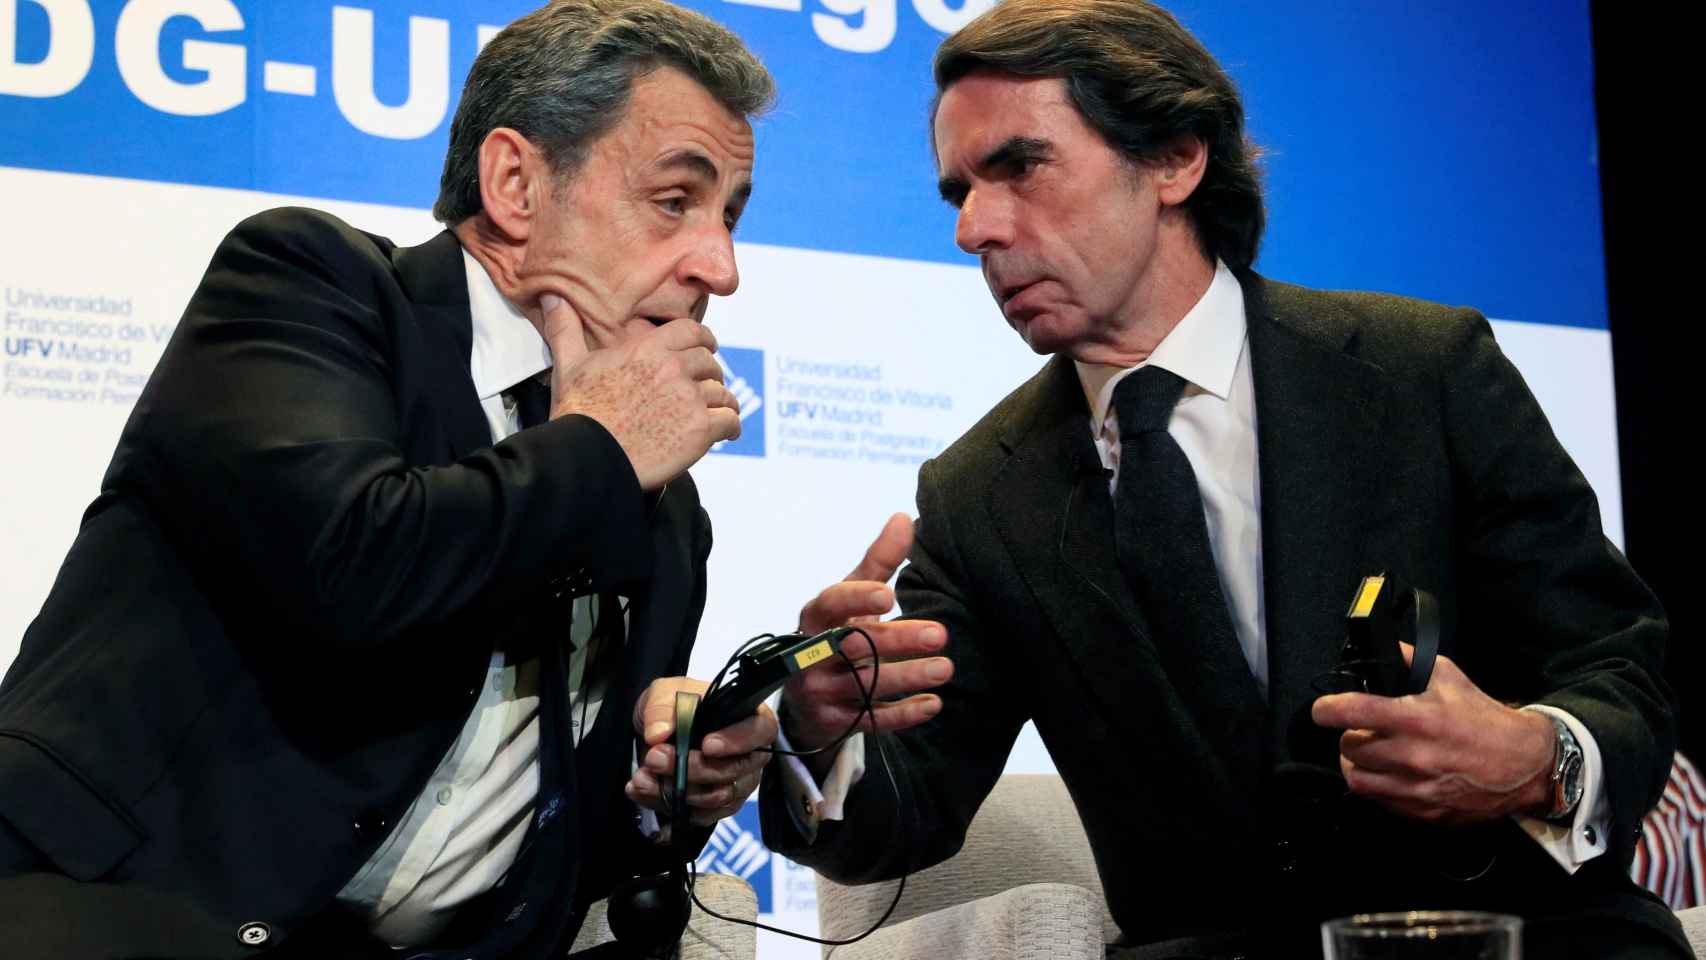 Nicolas Sarkozy y José María Aznar durante una conferencia en la Universidad Francisco de Vitoria.